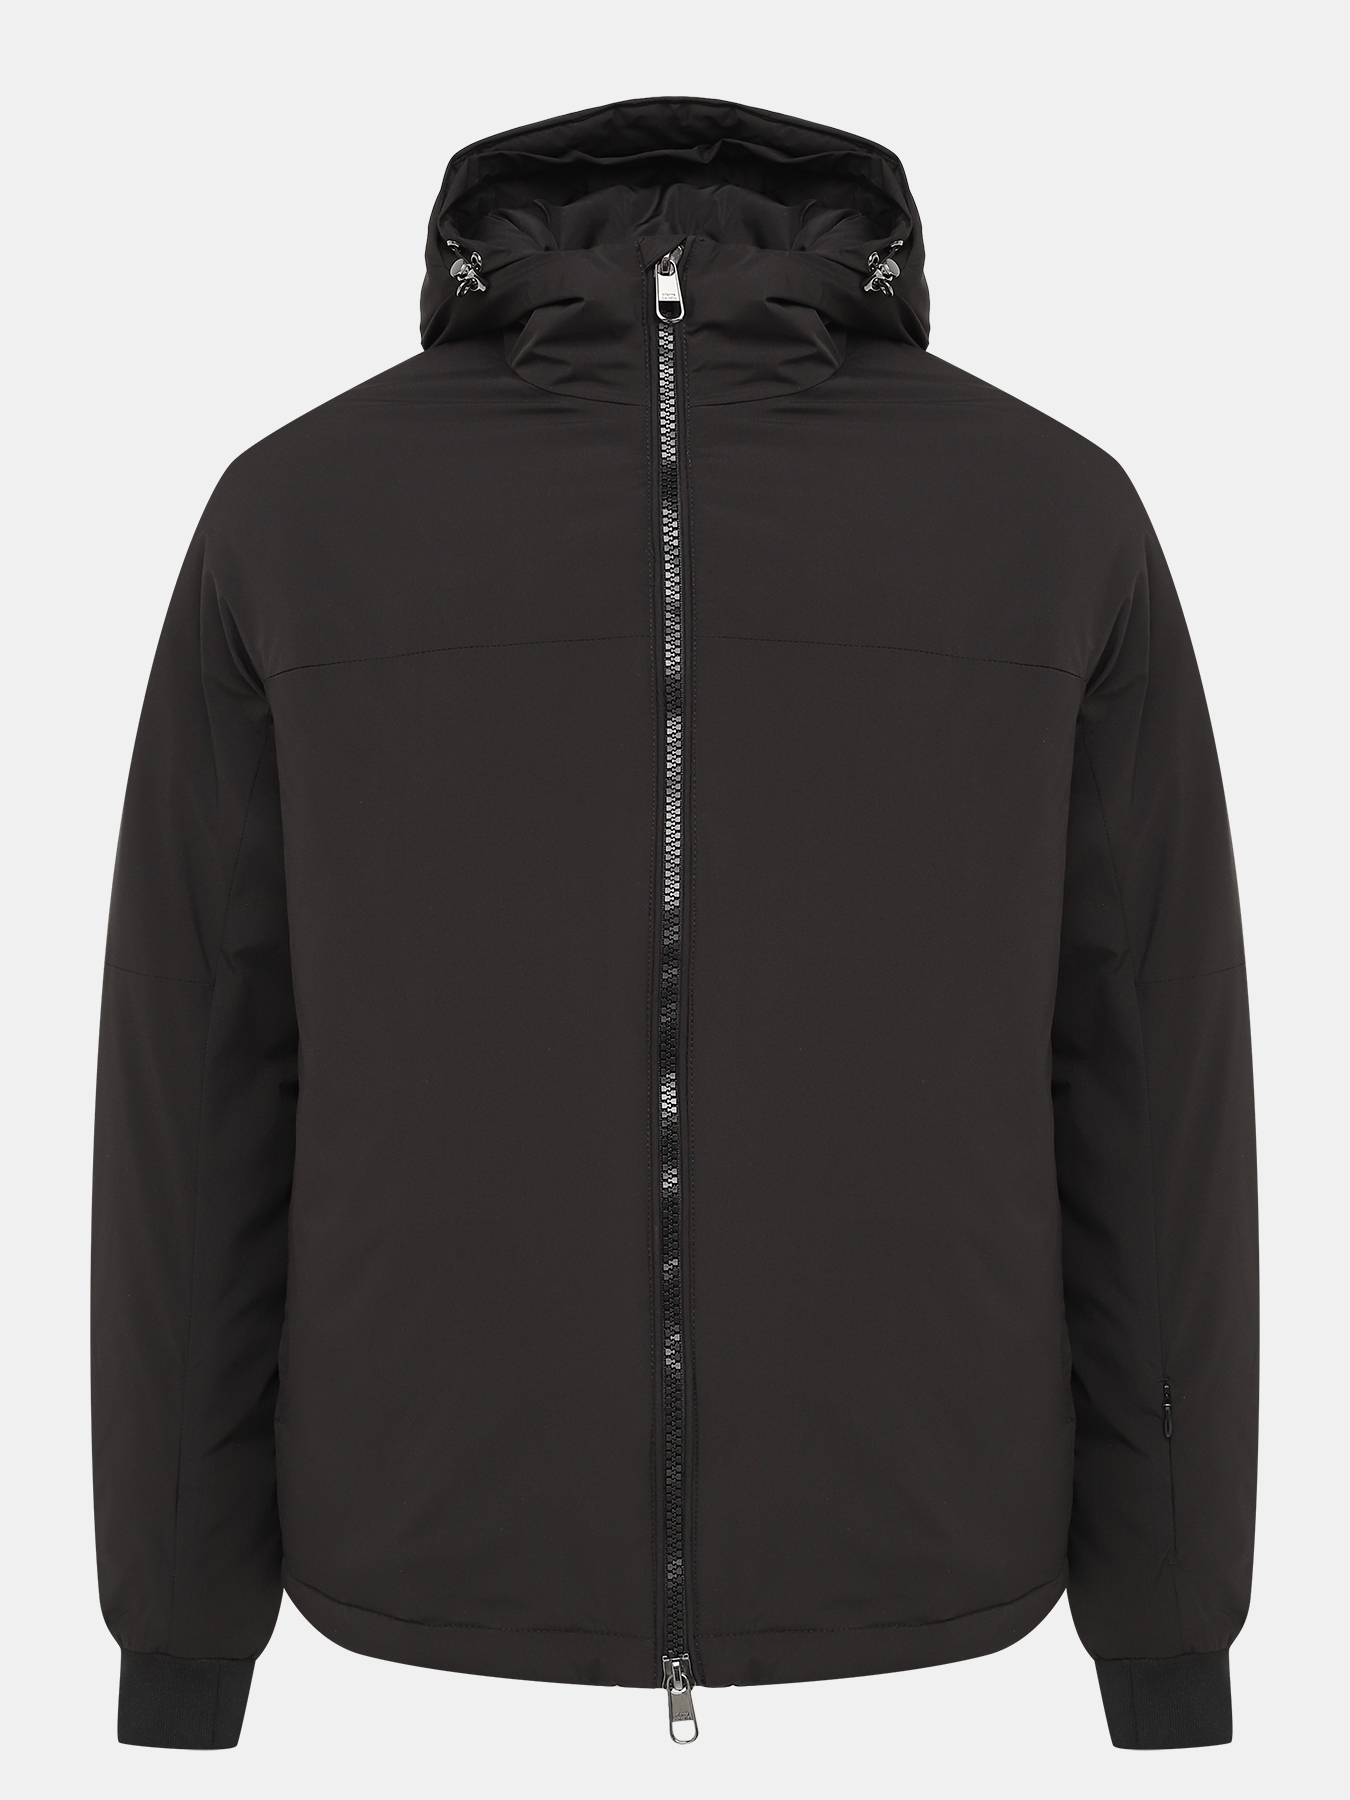 Куртка Pierre Cardin 426244-287, цвет черный, размер 56-58